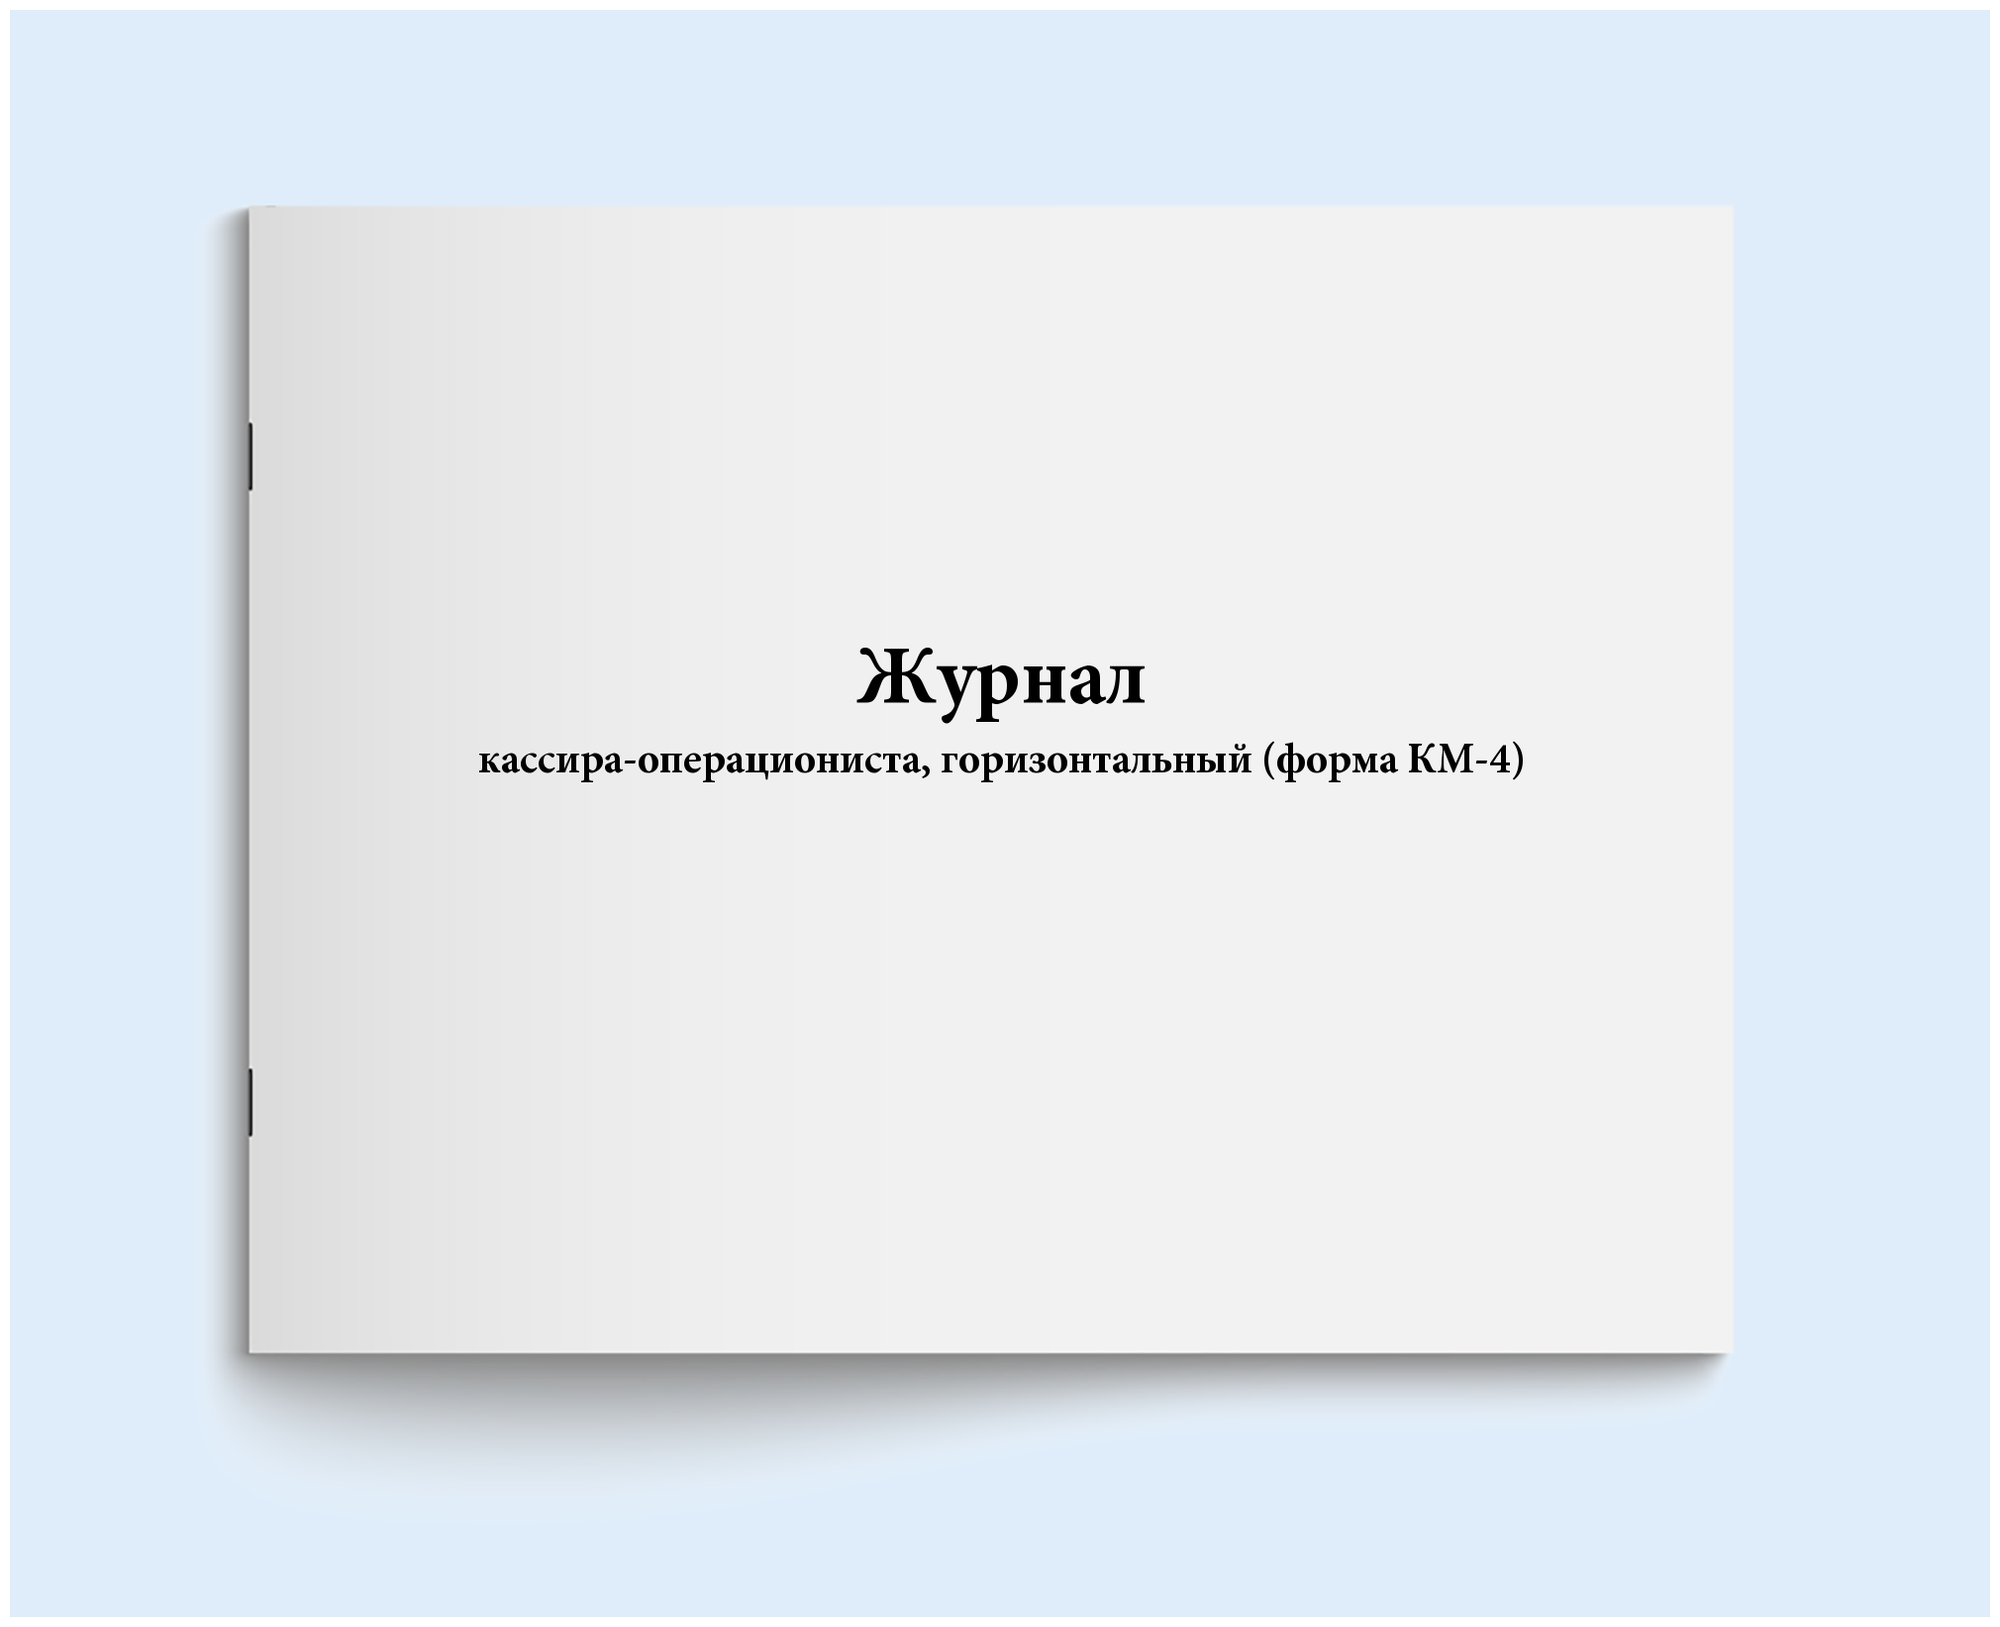 Журнал кассира-операциониста, горизонтальный (форма КМ-4). 120 страниц